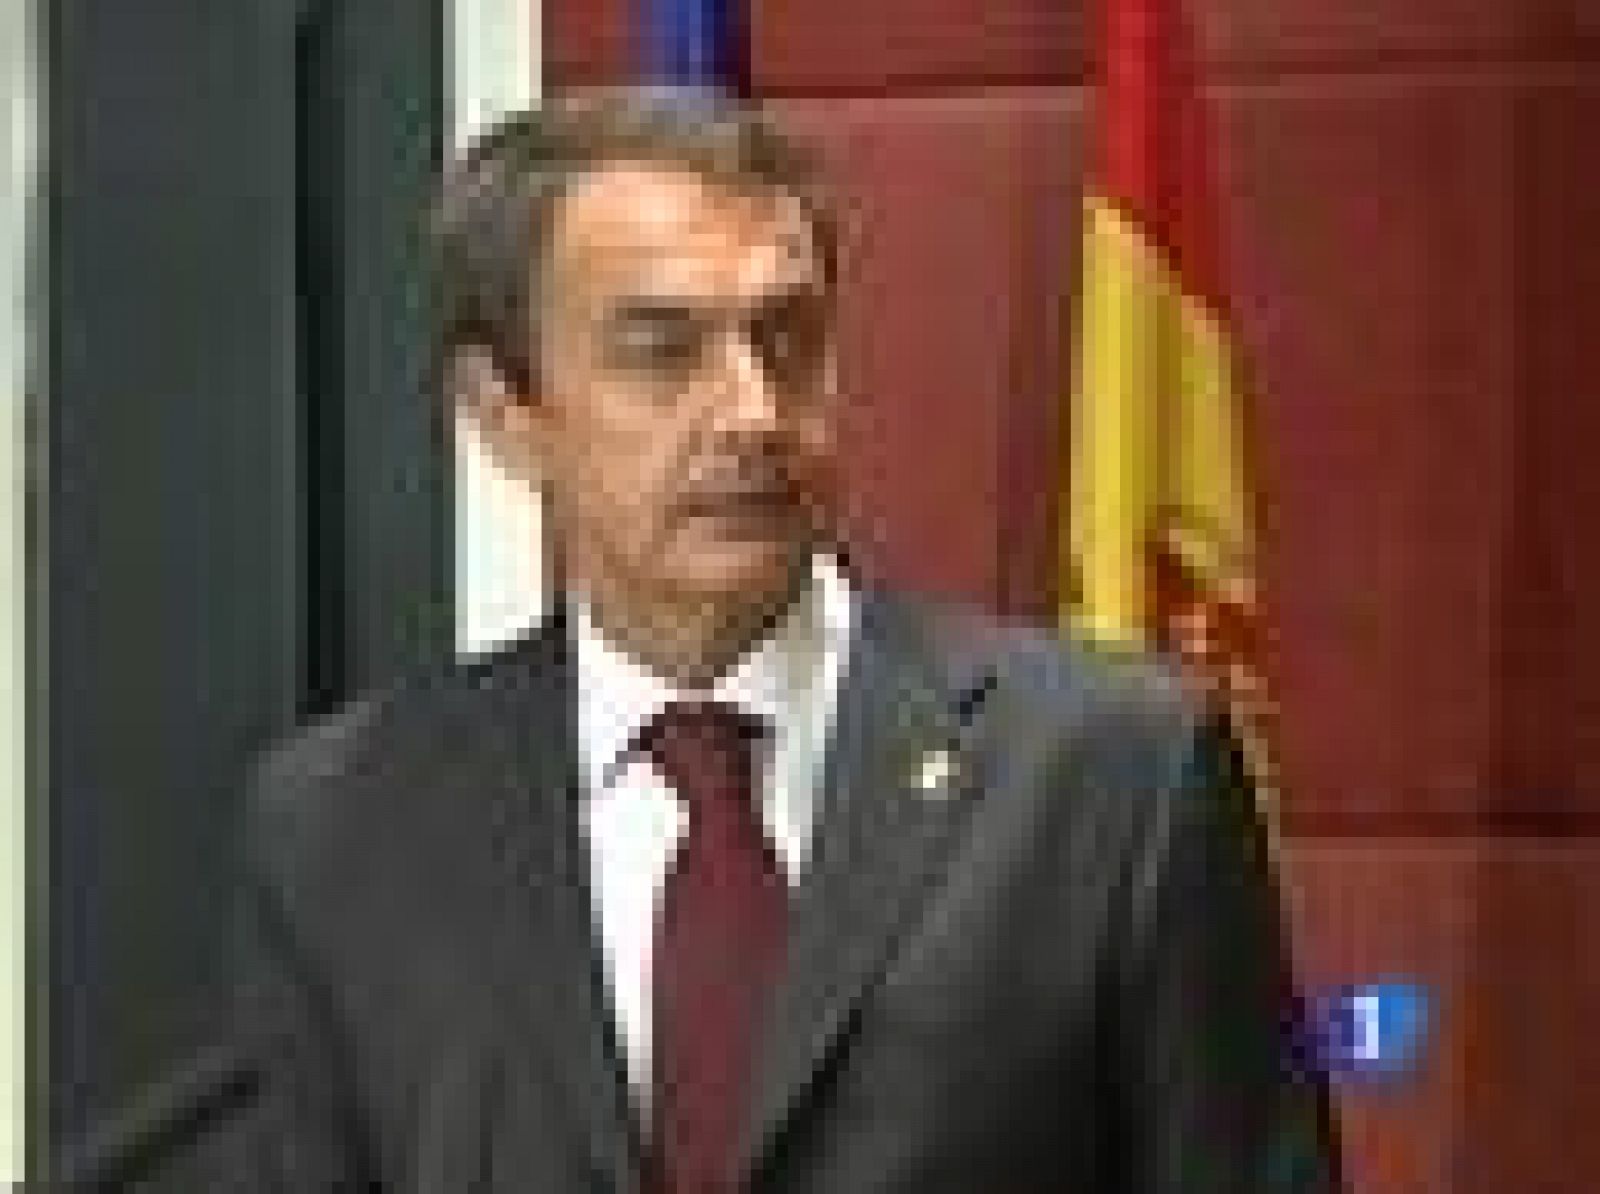  Zapatero ha iniciado hoy una visita oficial al continente asiático, ha pedido prudencia aunque no ha ocultado su preocupación por lo ocurrido en El Alaiún
